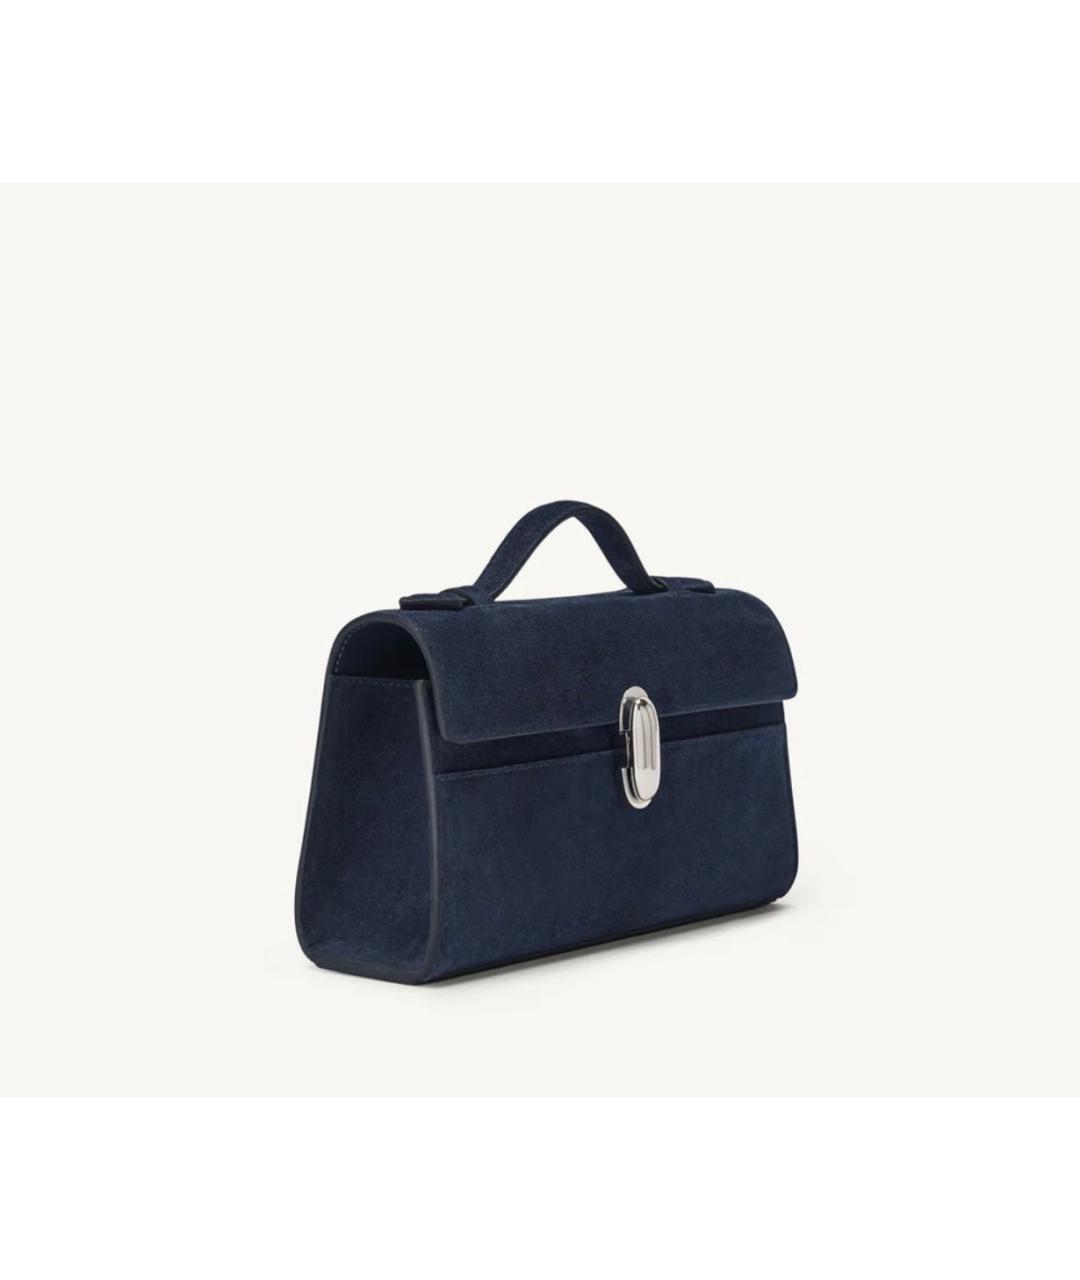 Savette Темно-синяя замшевая сумка с короткими ручками, фото 2